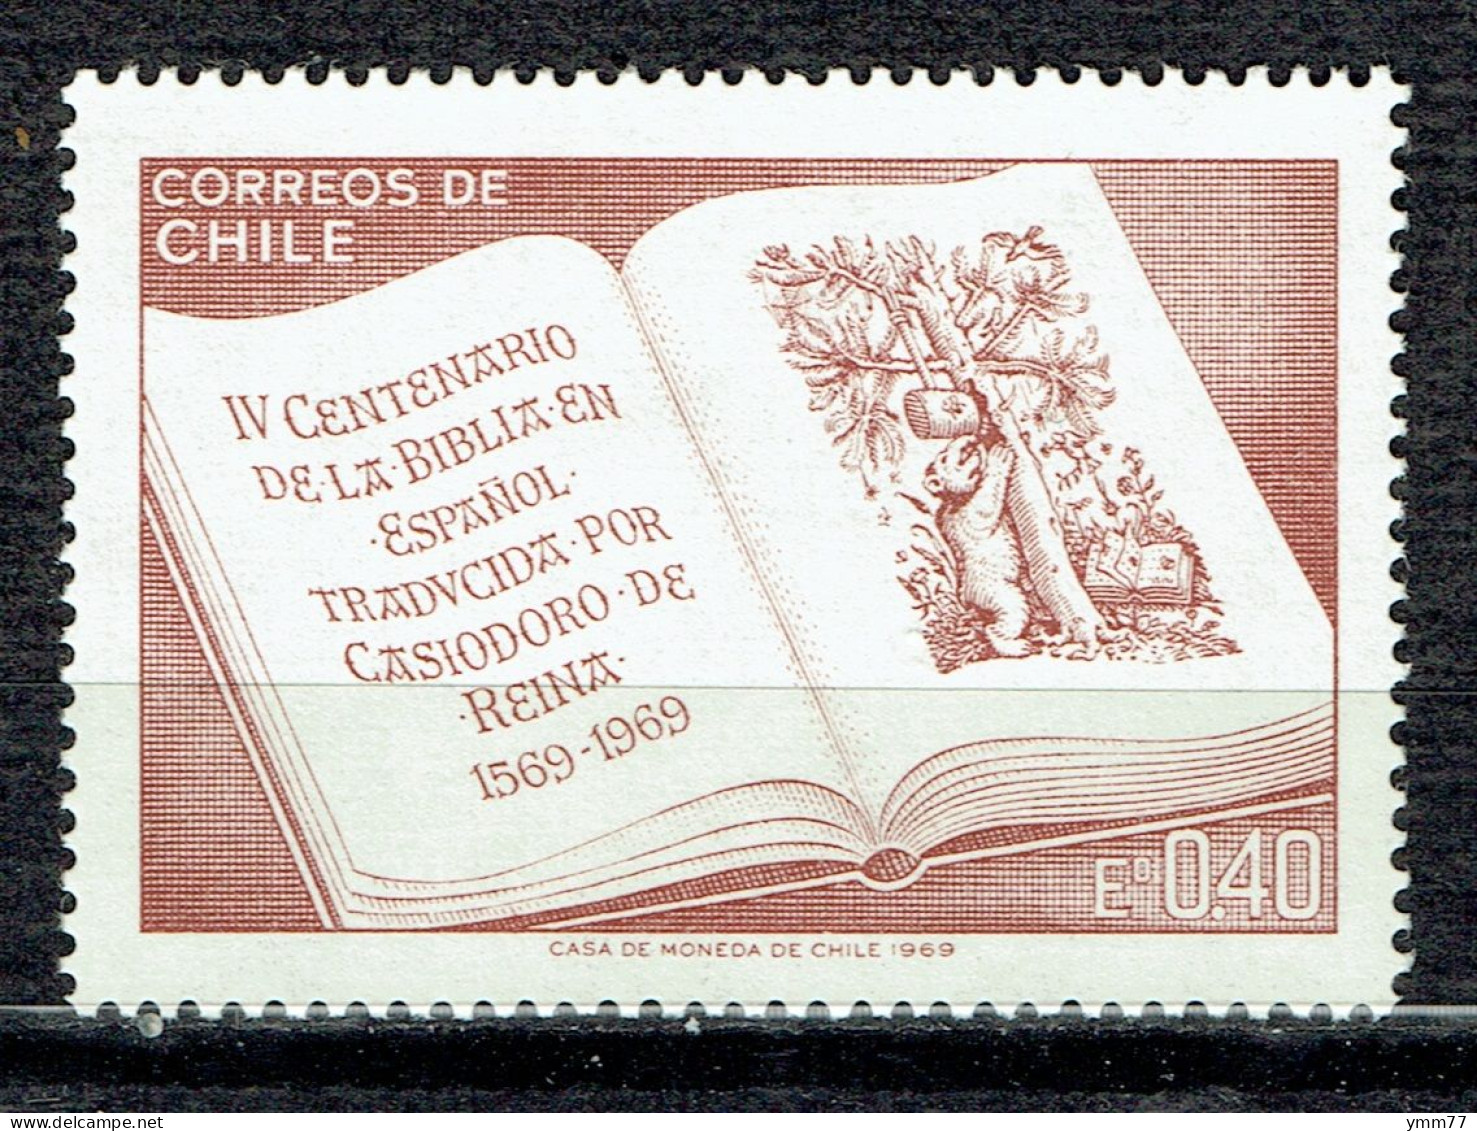 4ème Centenaire De La Bible En Espagnol Traduite Par Casiodoro De Reina - Cile